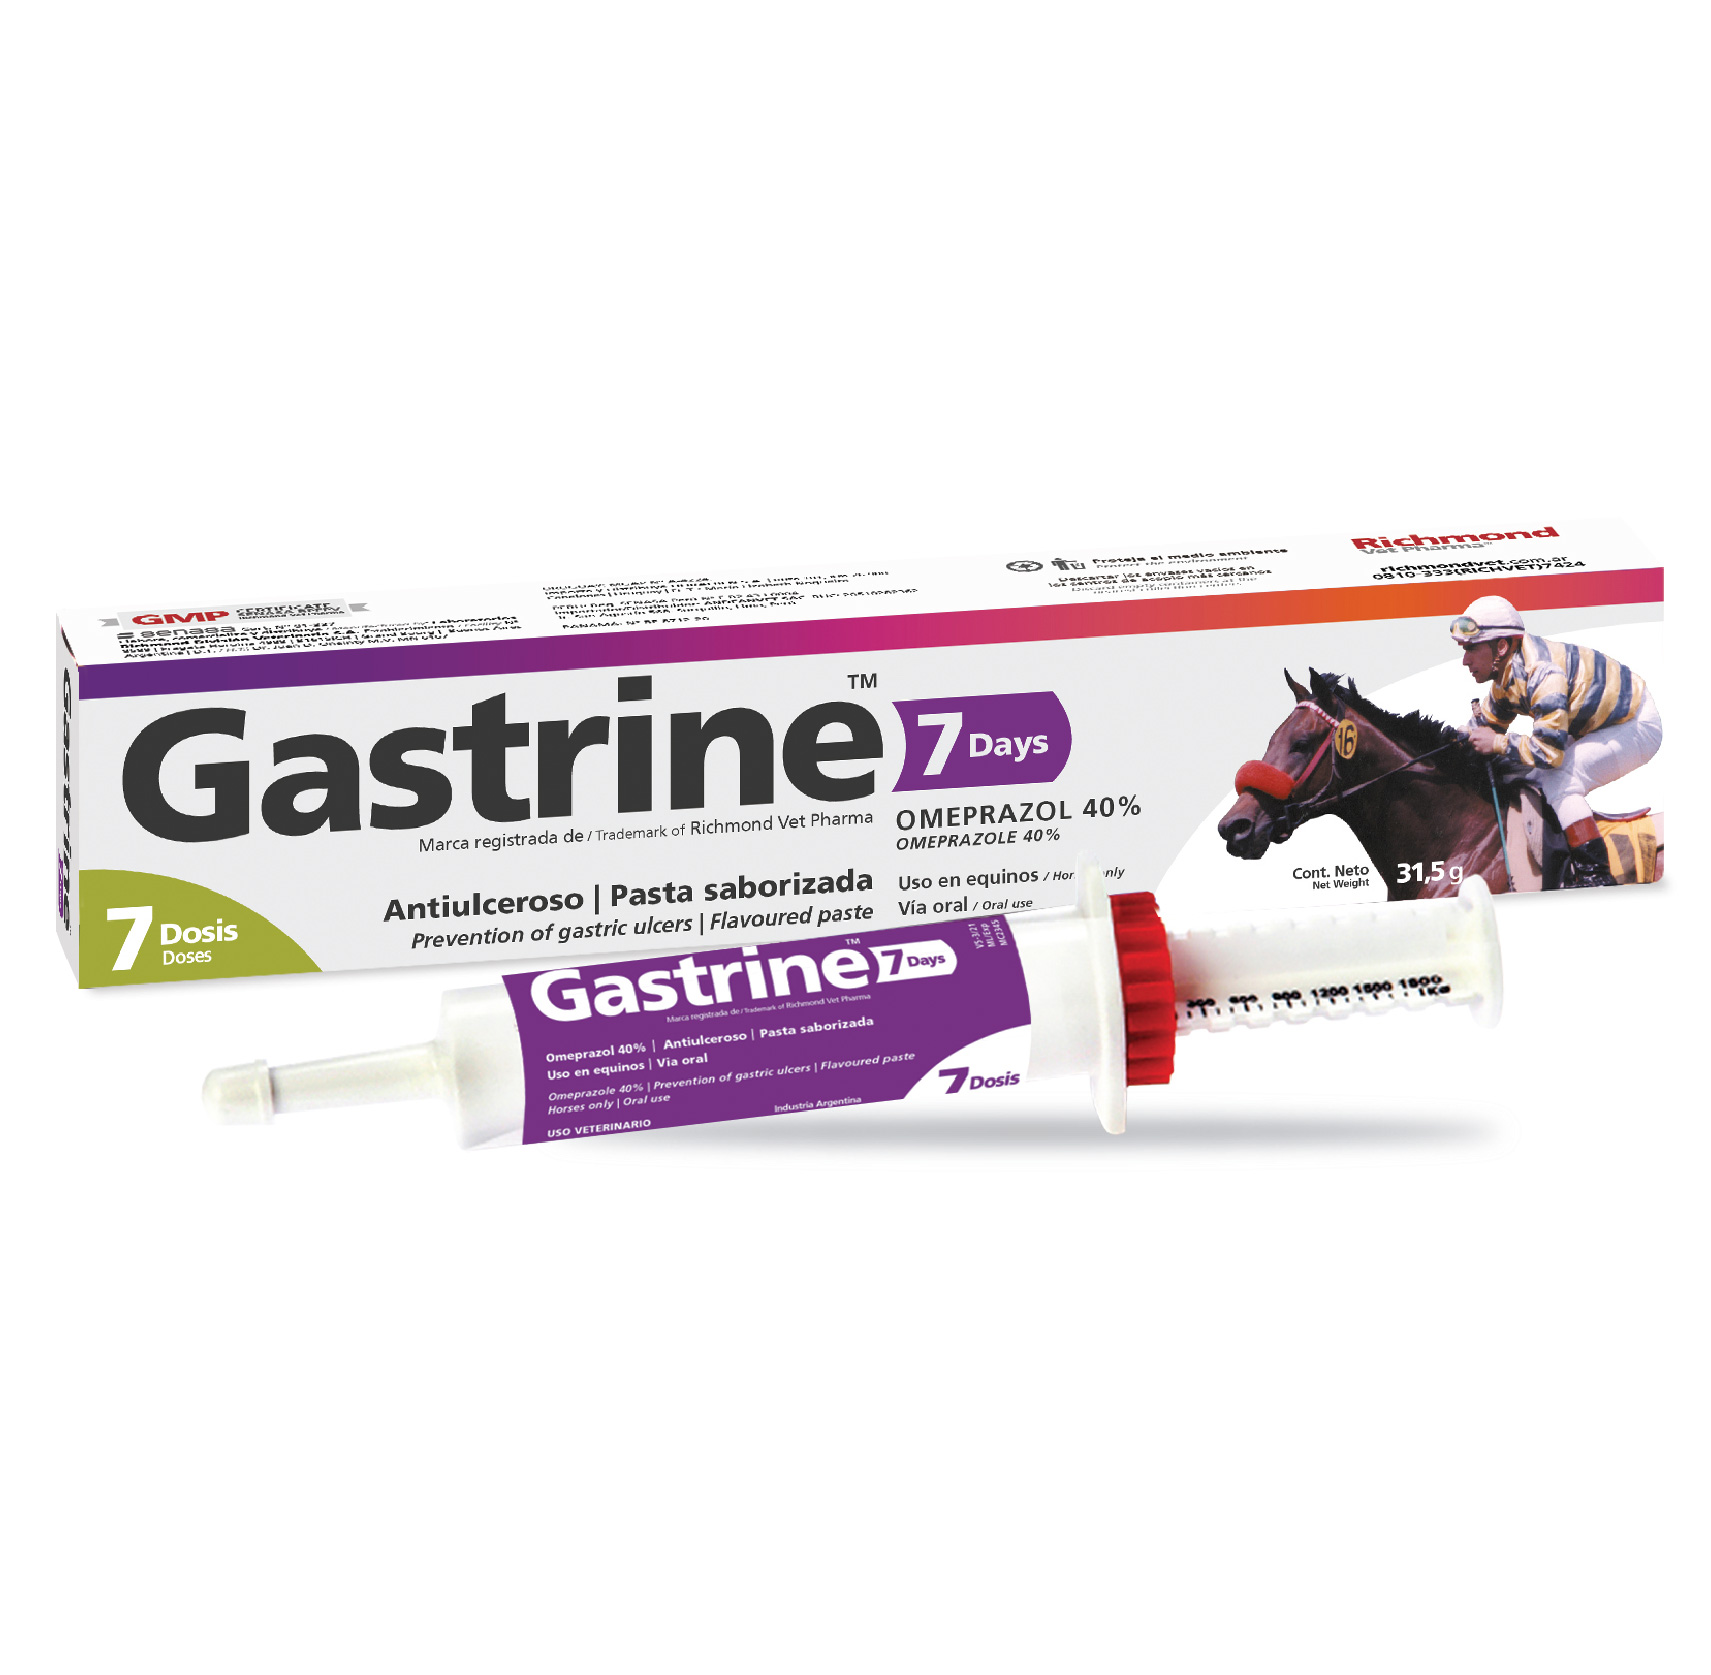 Gastrine 7 days